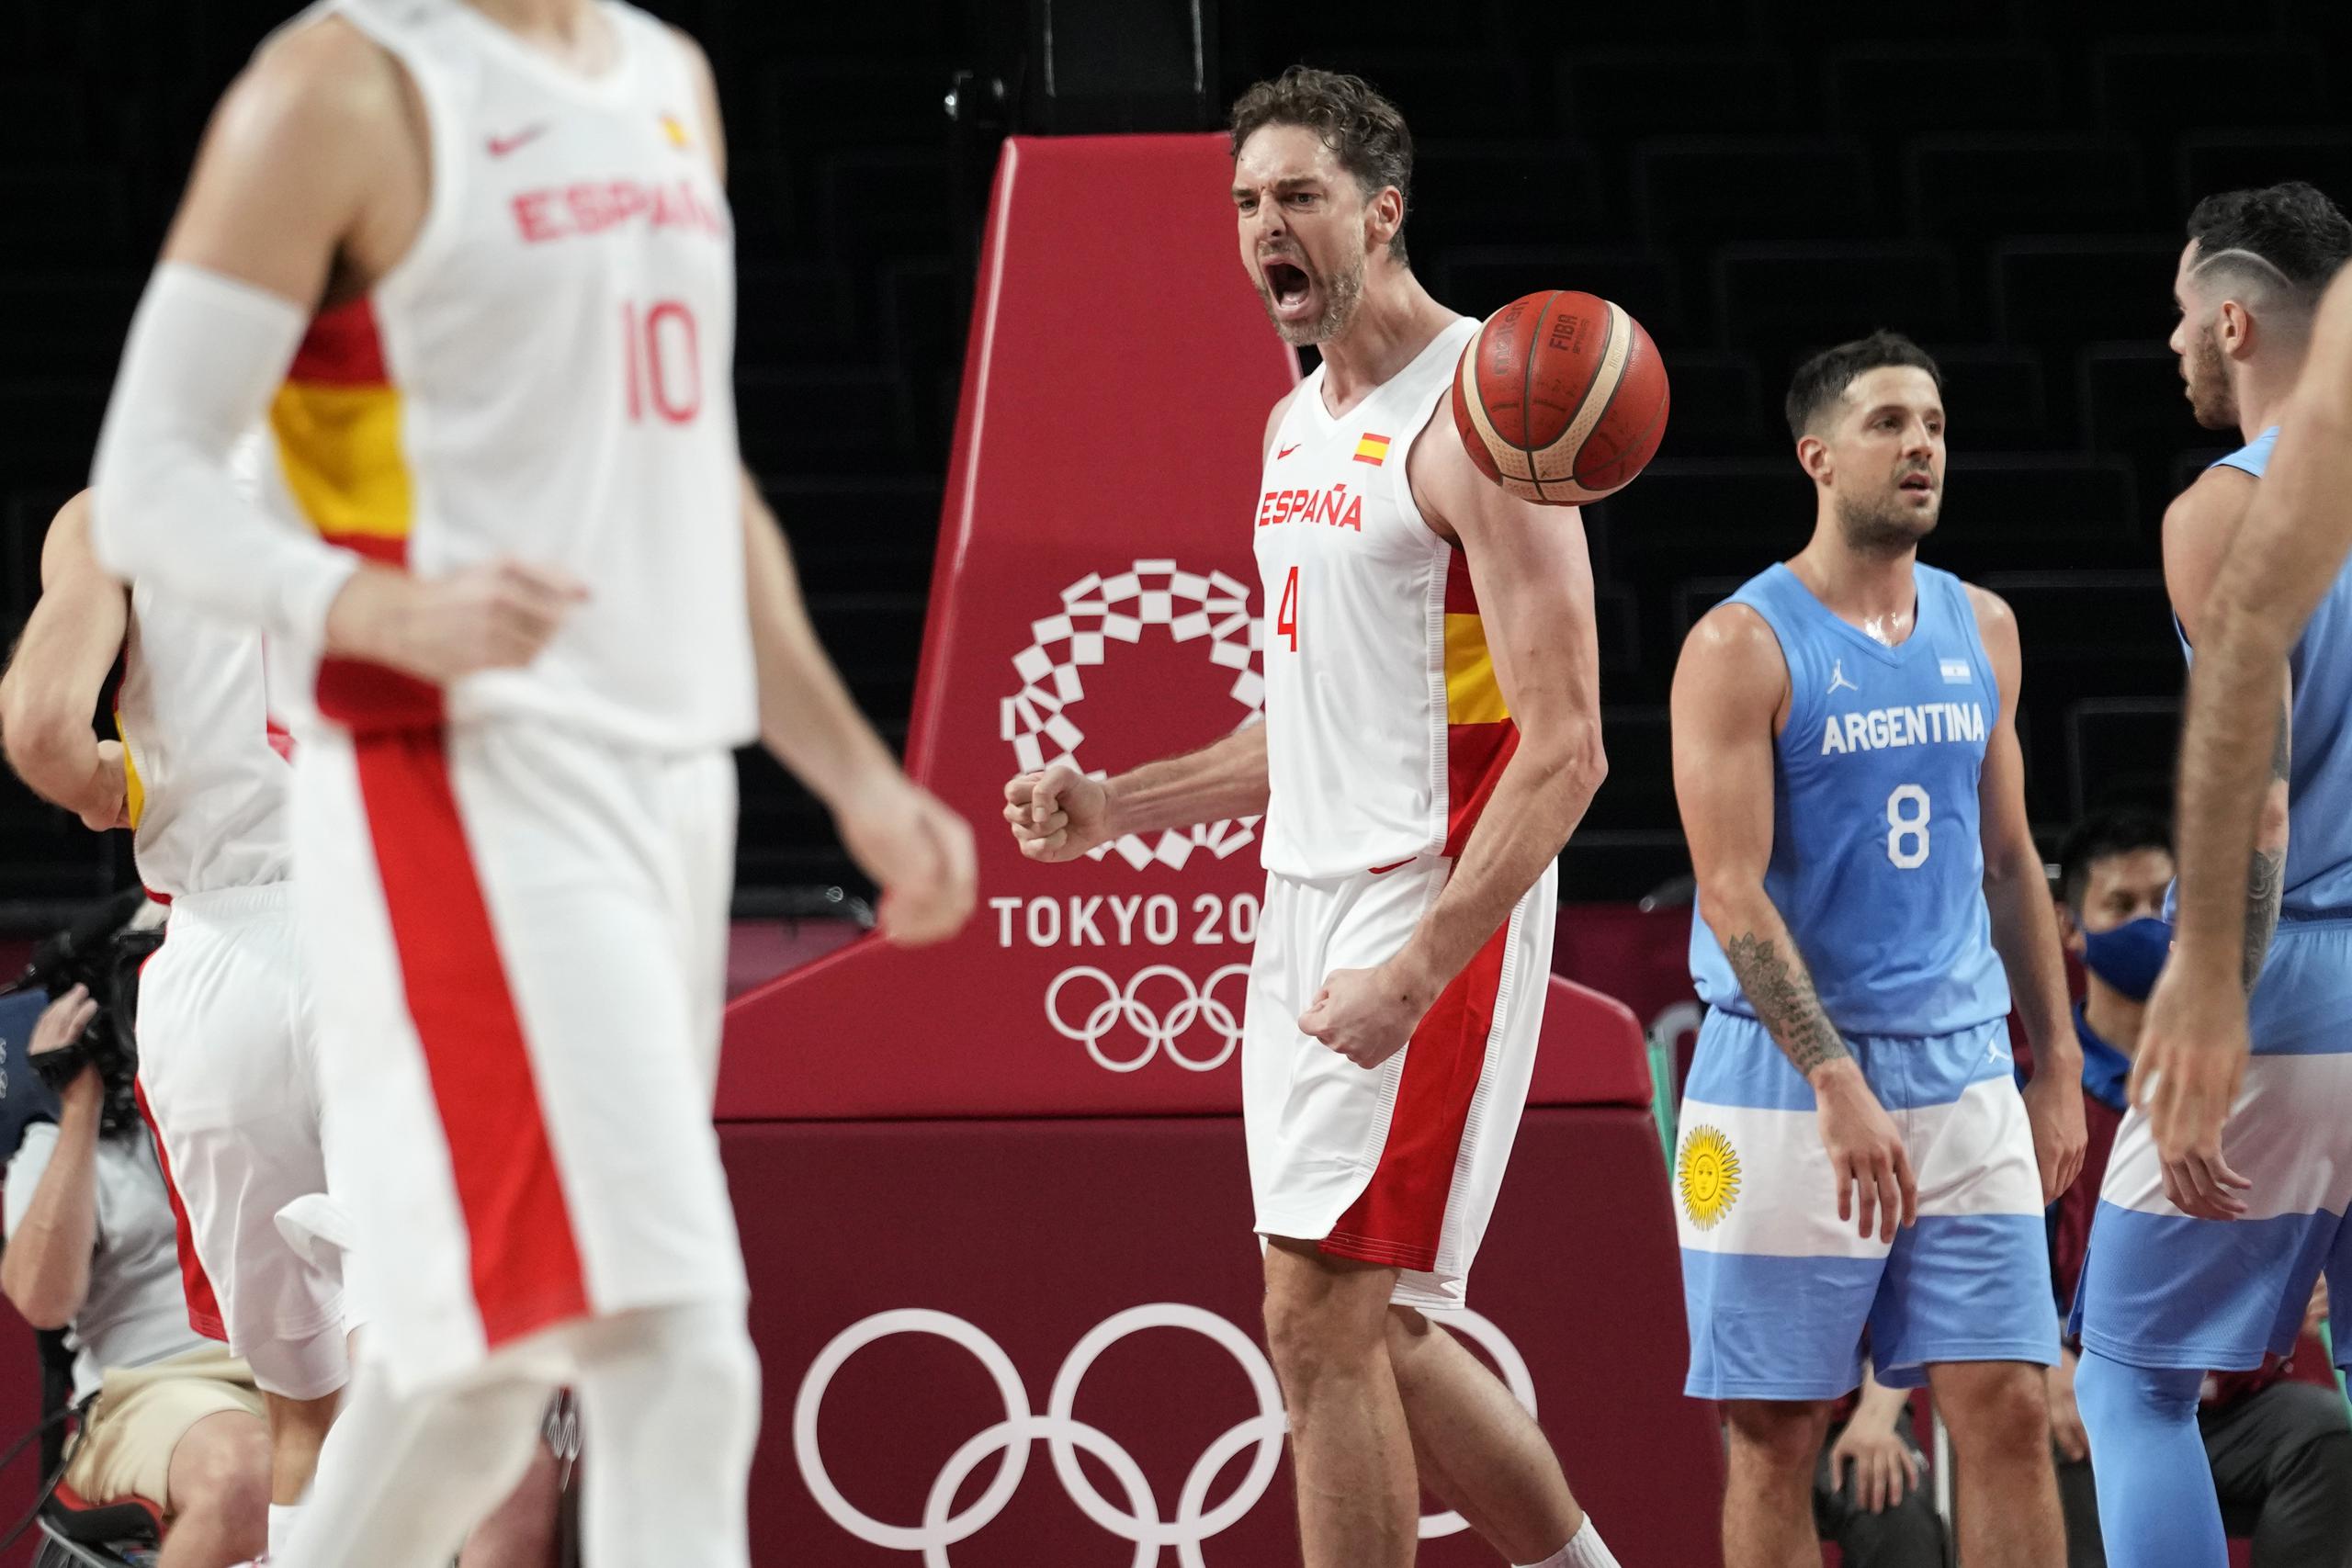 El español Pau Gasol (4) celebra tras anotar una canasta en un partido de la fase de grupos del torneo olímpico de baloncesto masculino de Tokio 2020 contra Argentina.